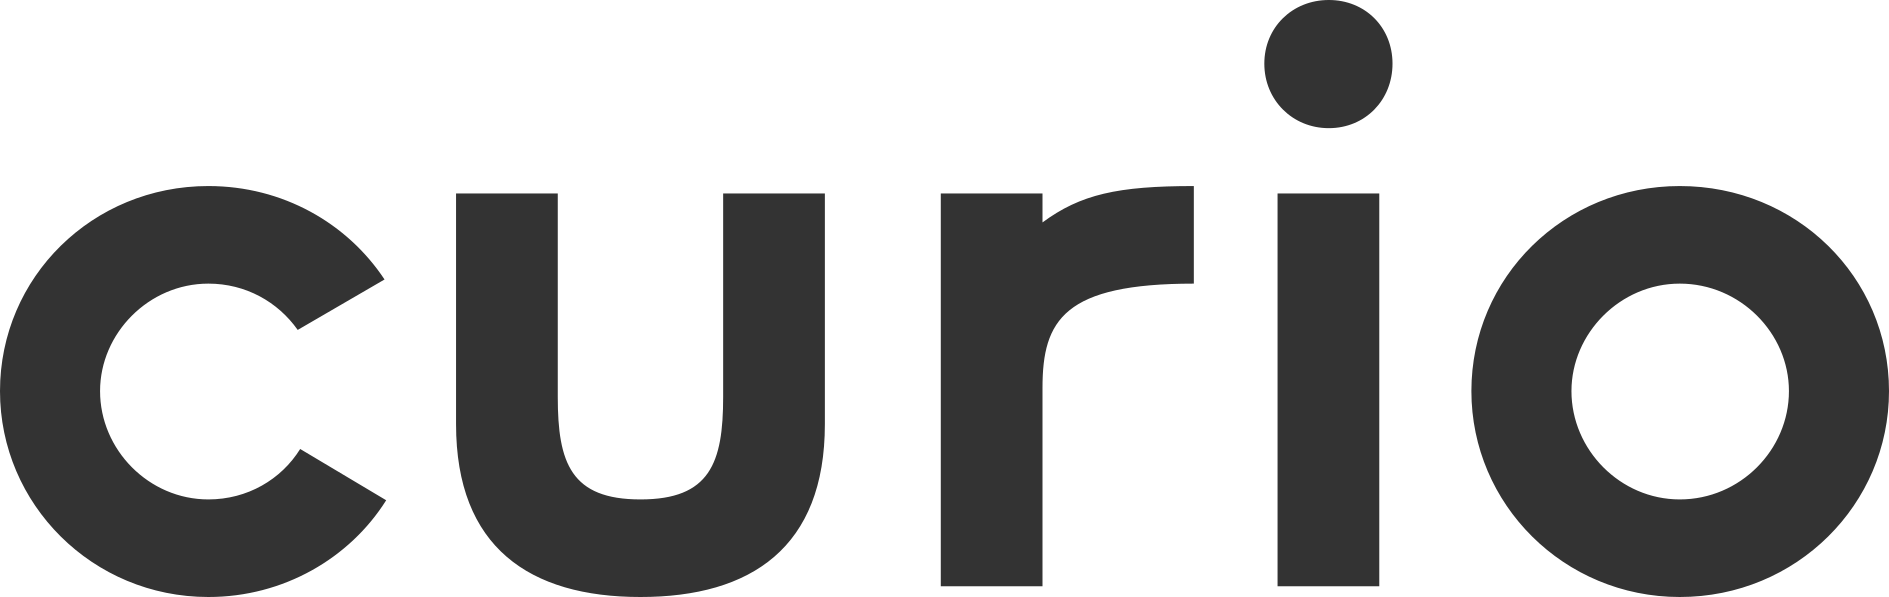 logo for Curio Group Ltd